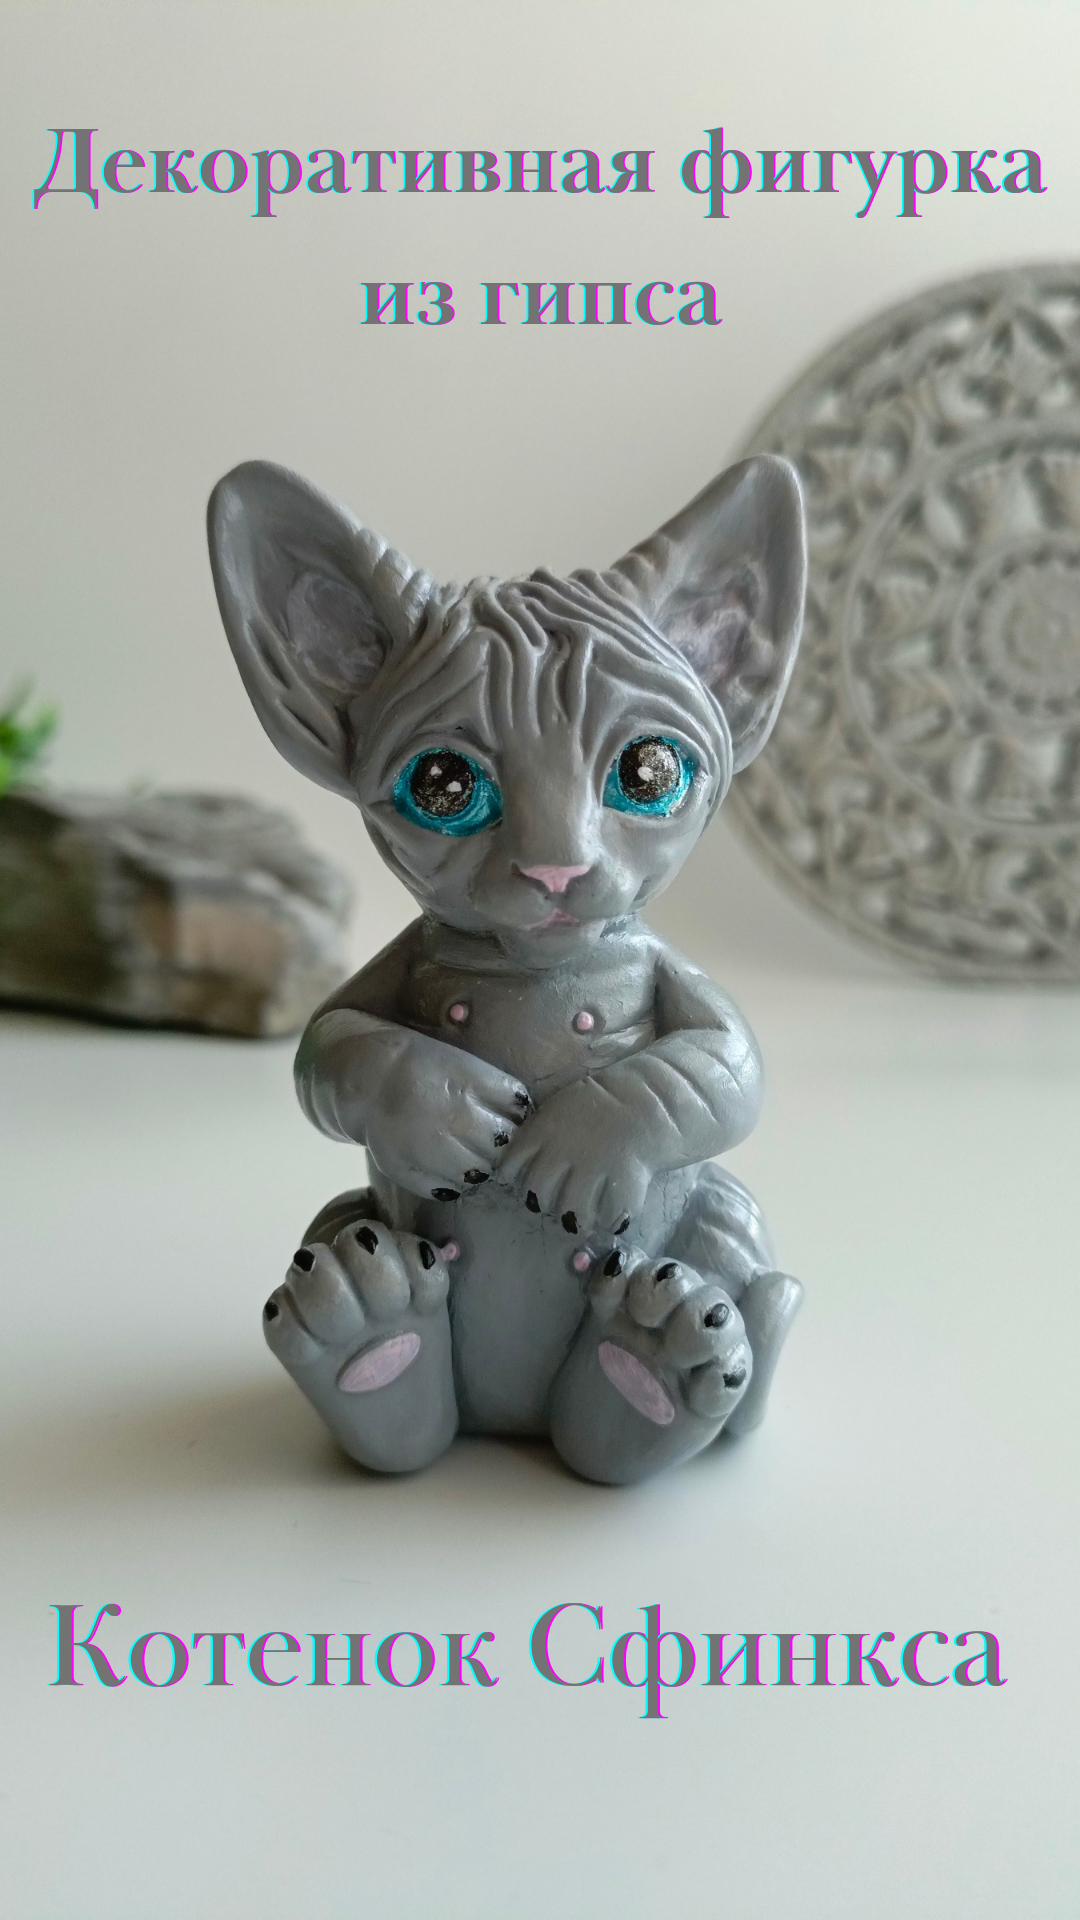 Котенок Сфинкса голубоглазый, декоративная фигурка из гипса